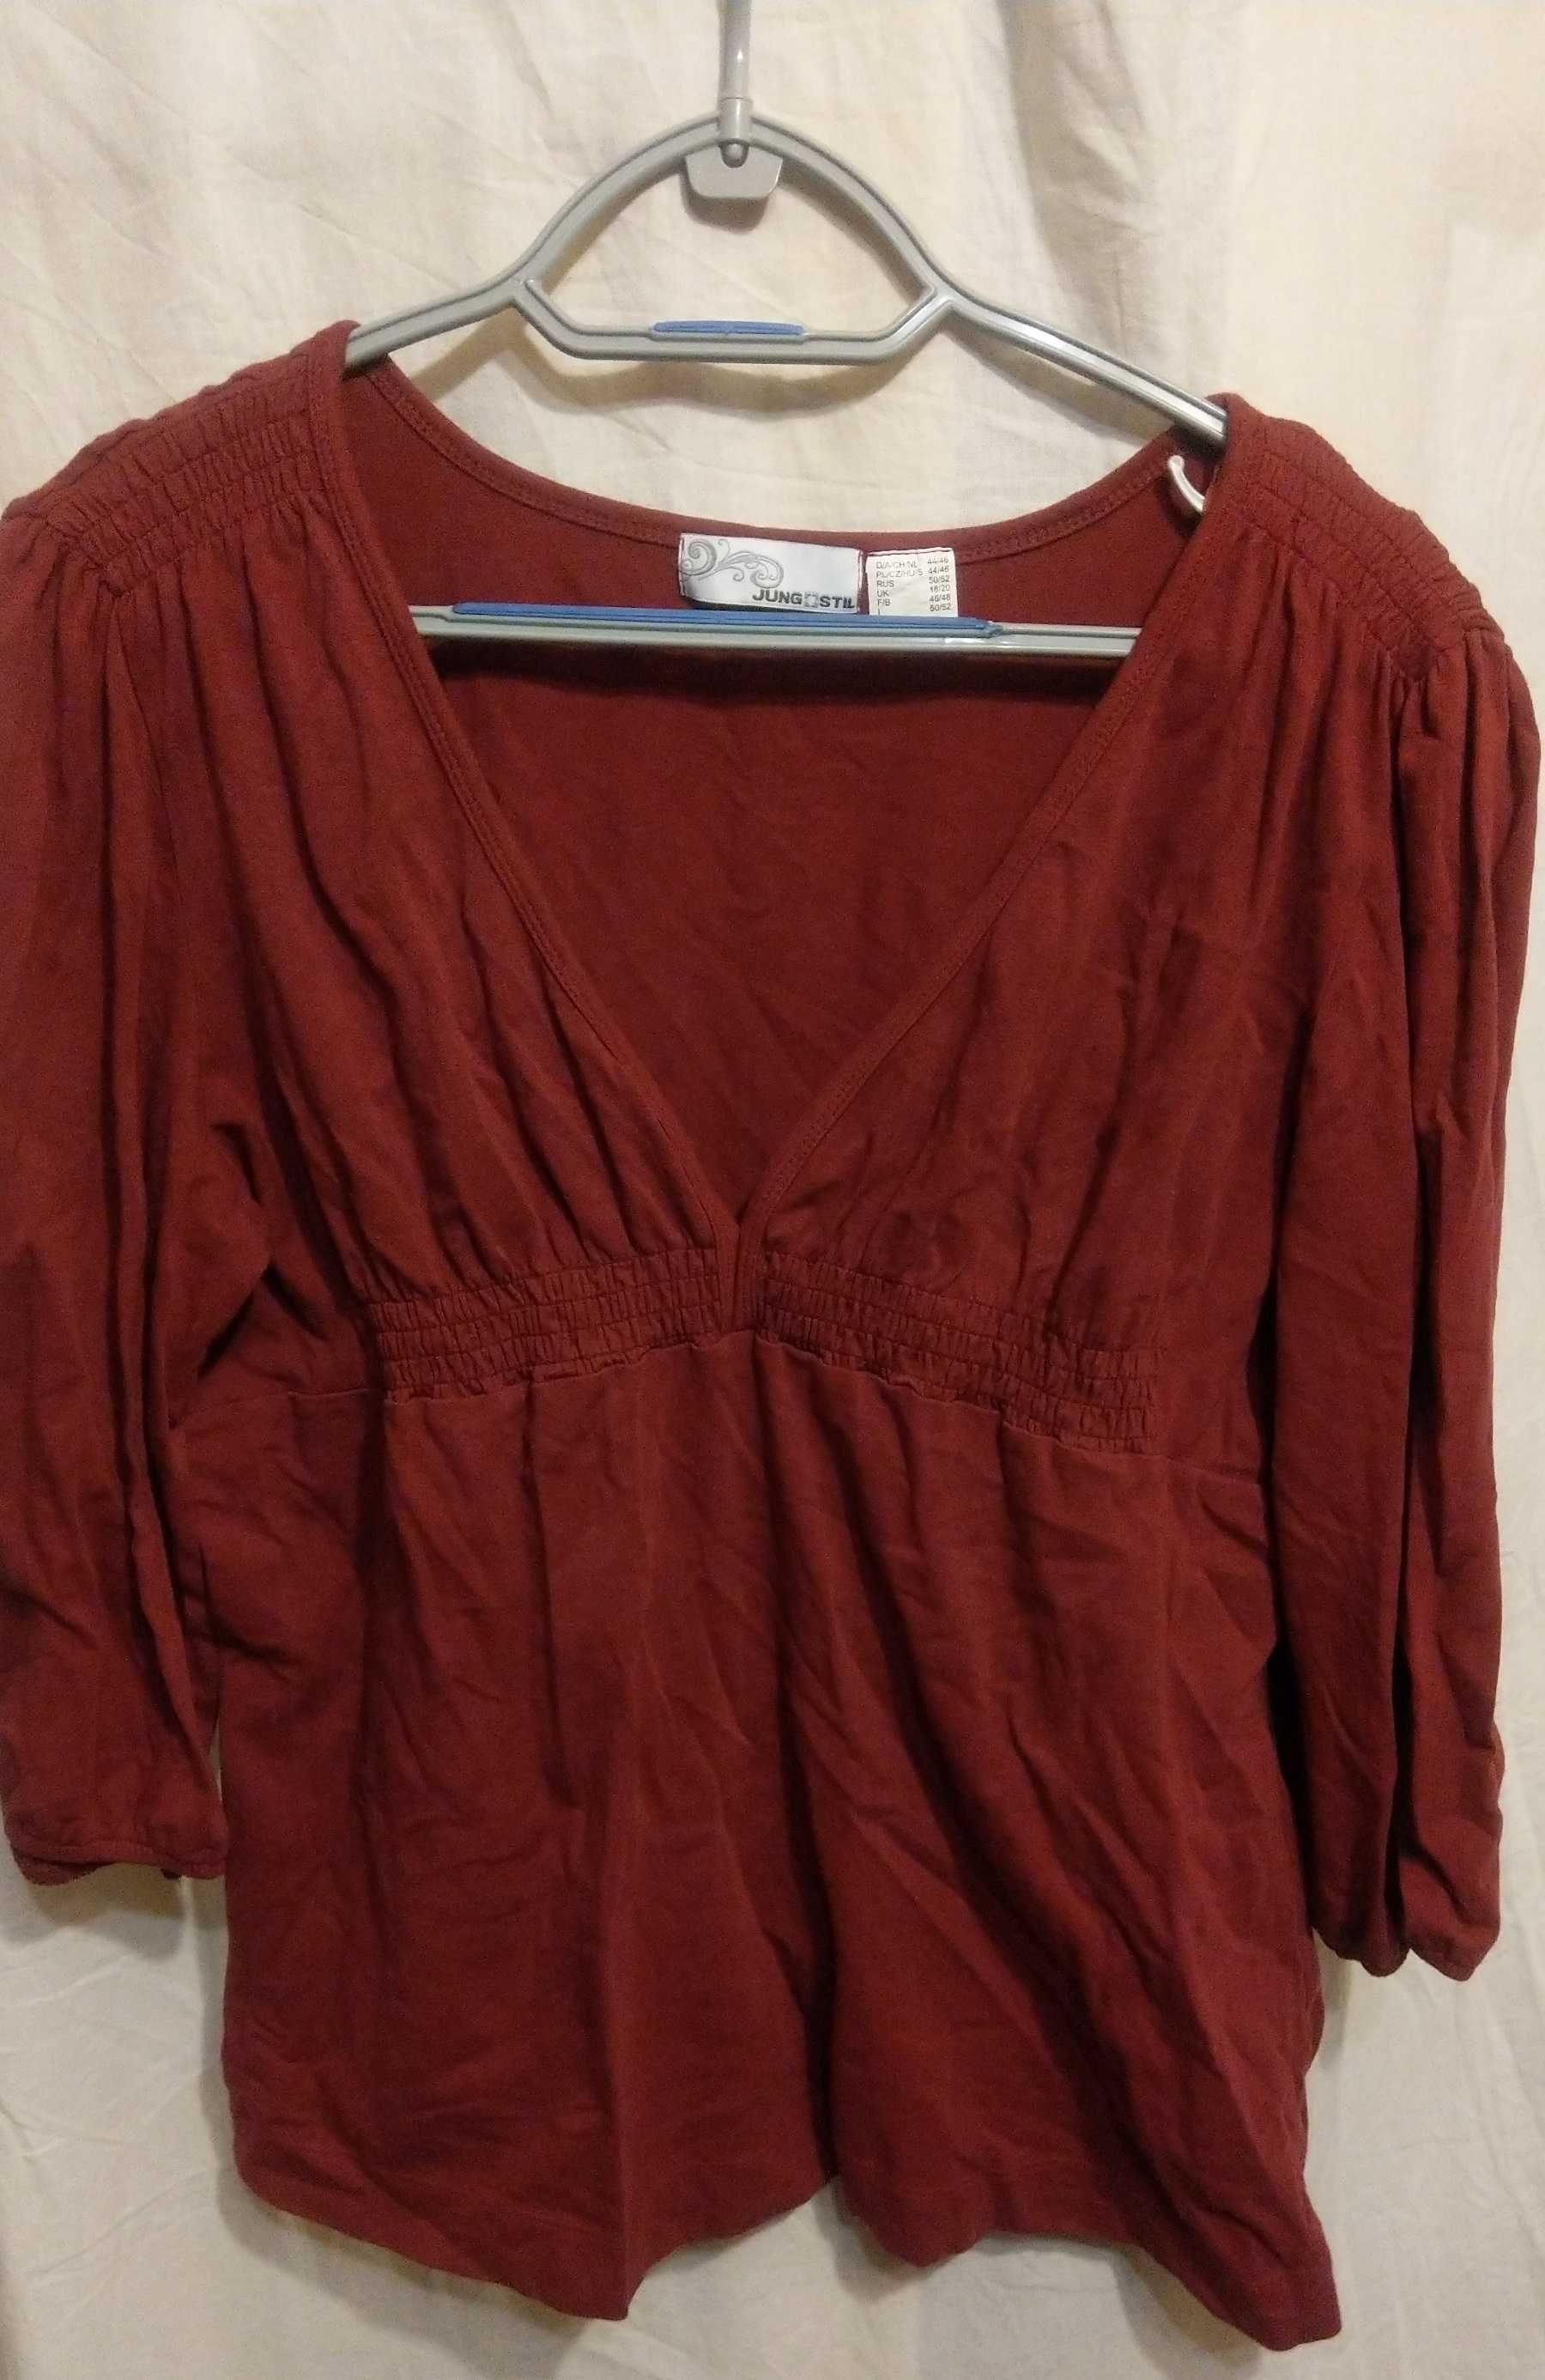 Ciemno czerwona bordowa bluzka M L XL wwysyłka